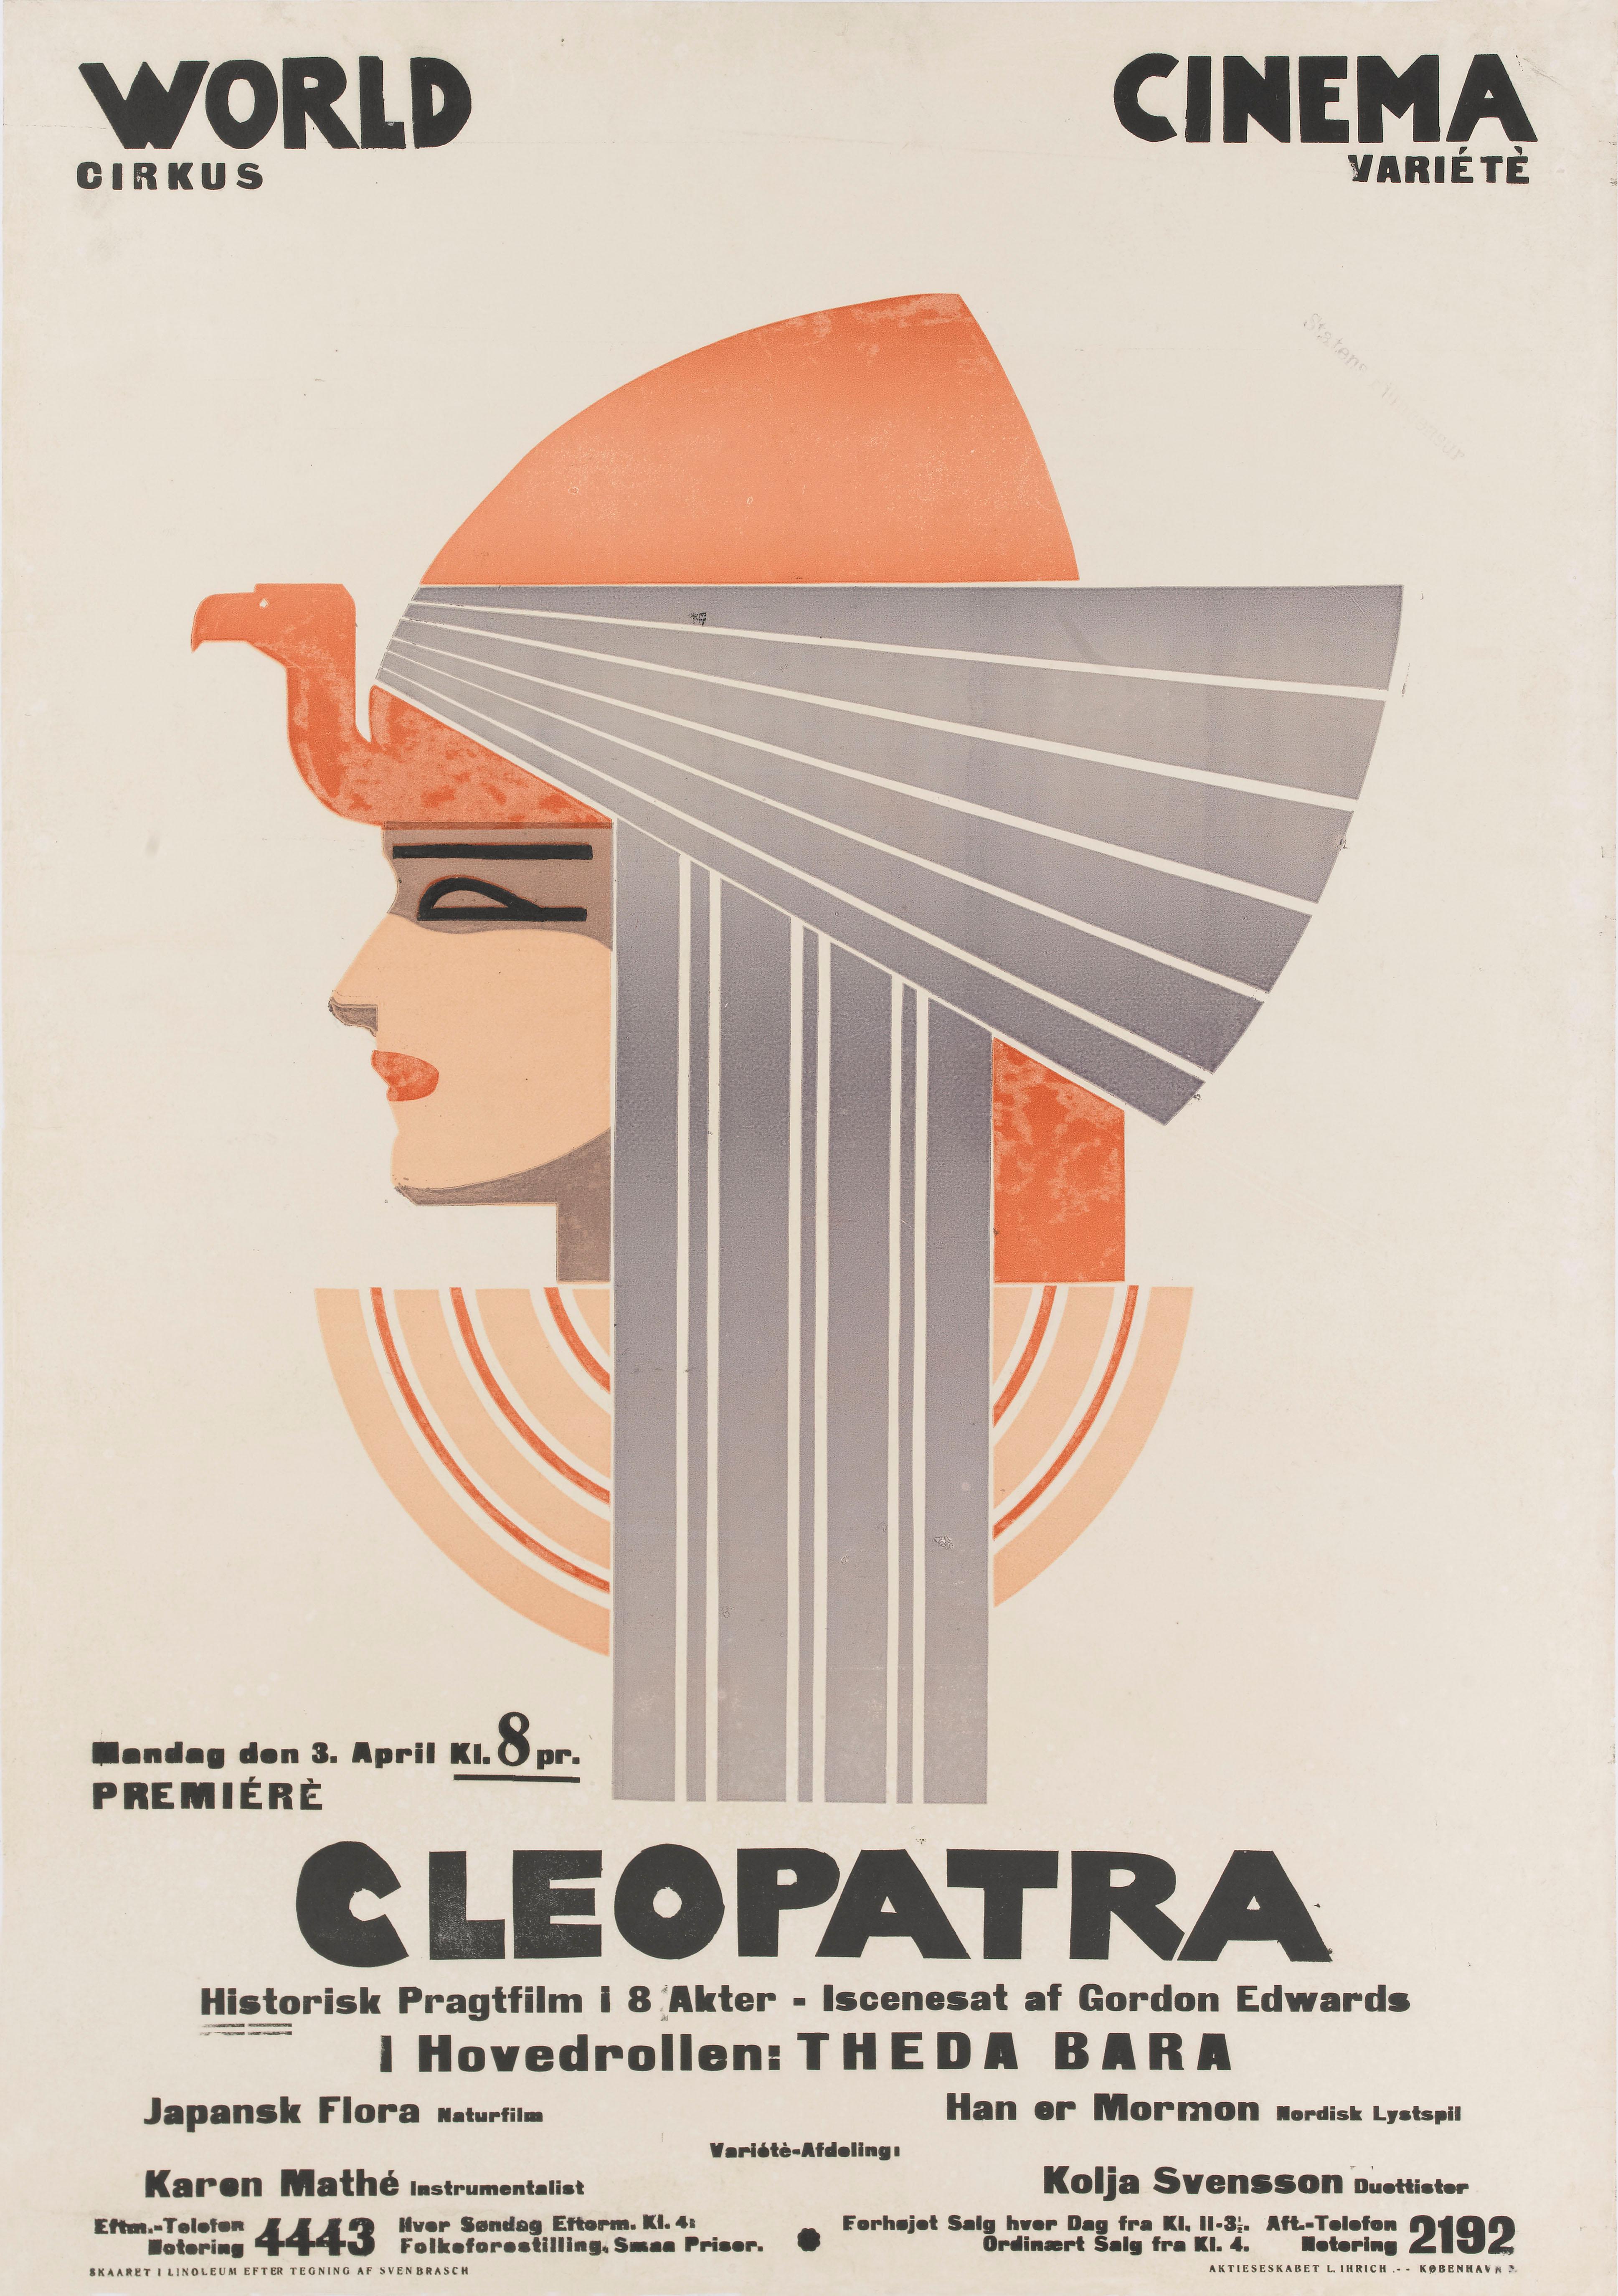 Affiche originale danoise. Première sortie danoise en 1921.

Du film muet Cléopâtre de 1917, il ne reste aujourd'hui qu'un fragment fragile, qui ne dure pas plus de quelques secondes. À l'époque, le film était l'un des plus grands succès de